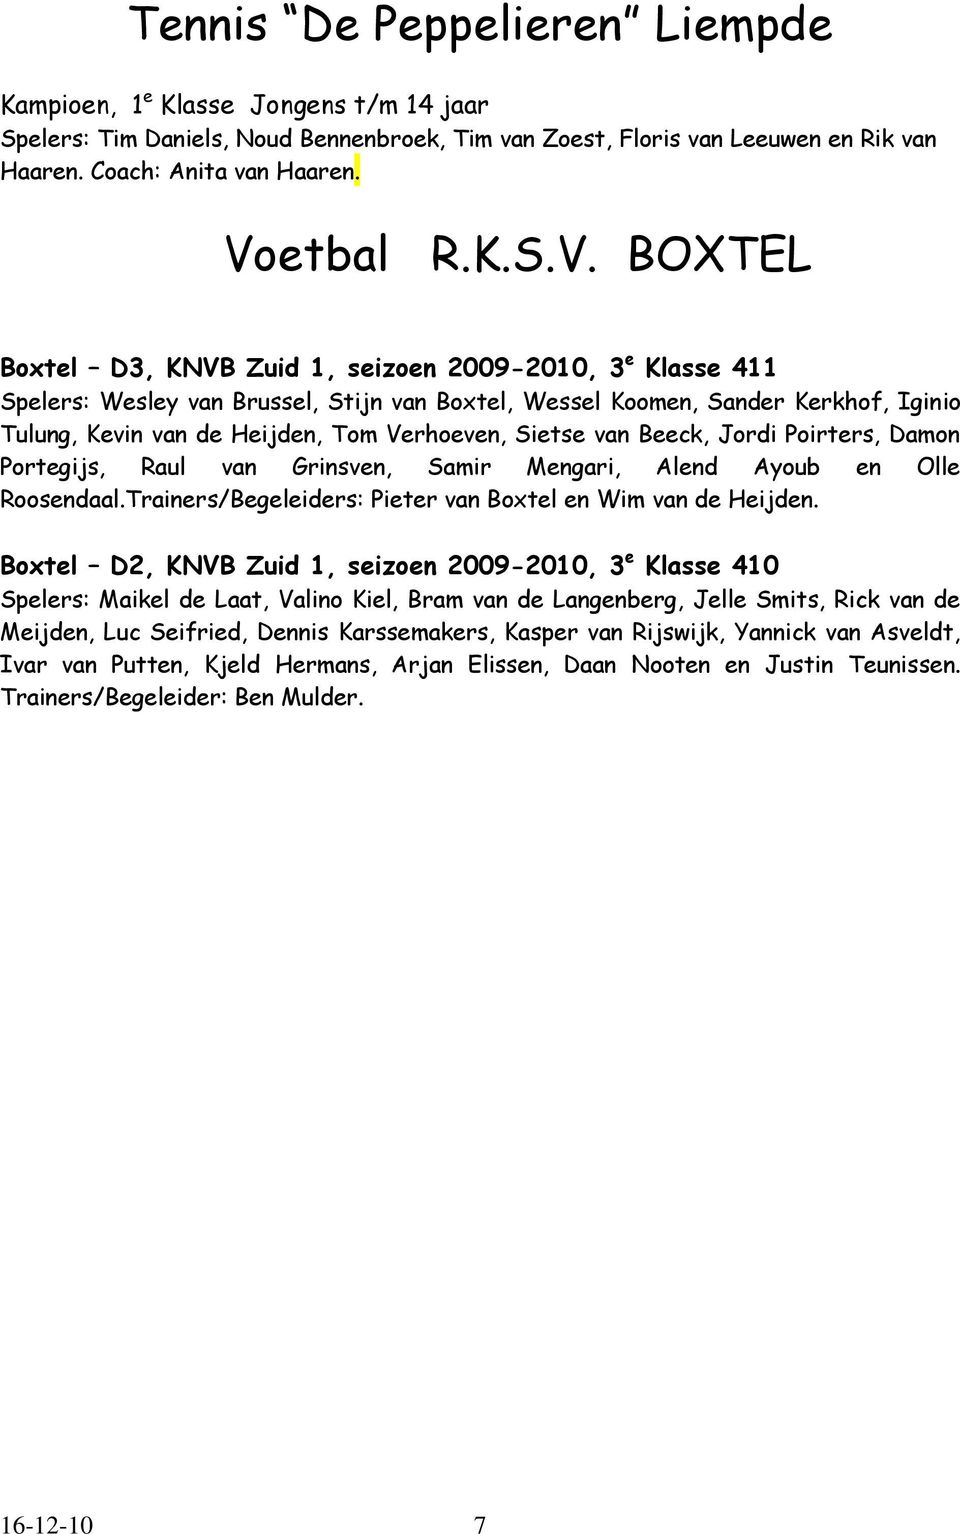 BOXTEL Boxtel D3, KNVB Zuid 1, seizoen 2009-2010, 3 e Klasse 411 Spelers: Wesley van Brussel, Stijn van Boxtel, Wessel Koomen, Sander Kerkhof, Iginio Tulung, Kevin van de Heijden, Tom Verhoeven,